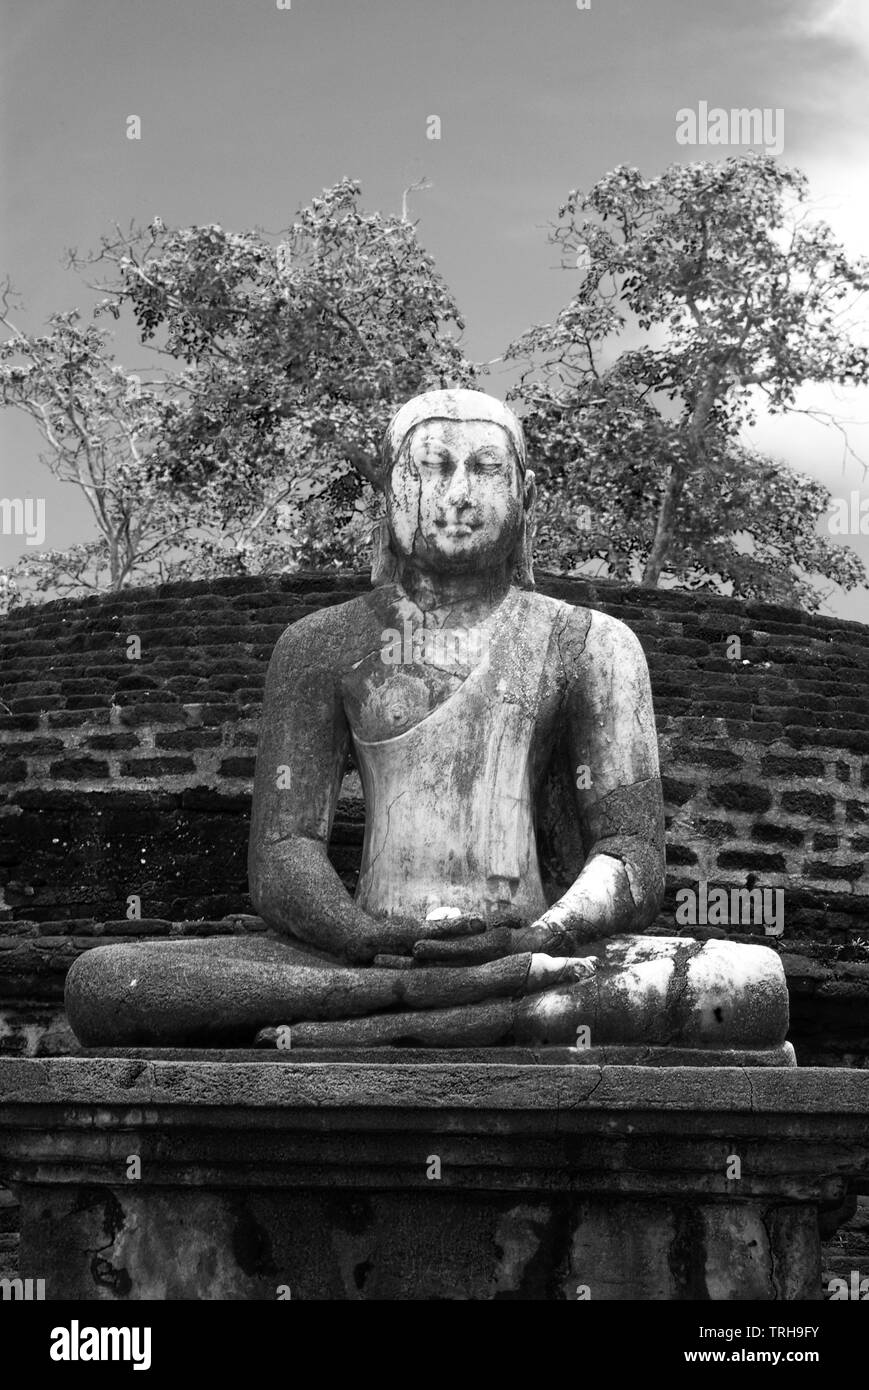 Statue de Bouddha assis à l'ancienne cité de Polonnaruwa au Sri Lanka, un règlement datant du 10e siècle. Banque D'Images